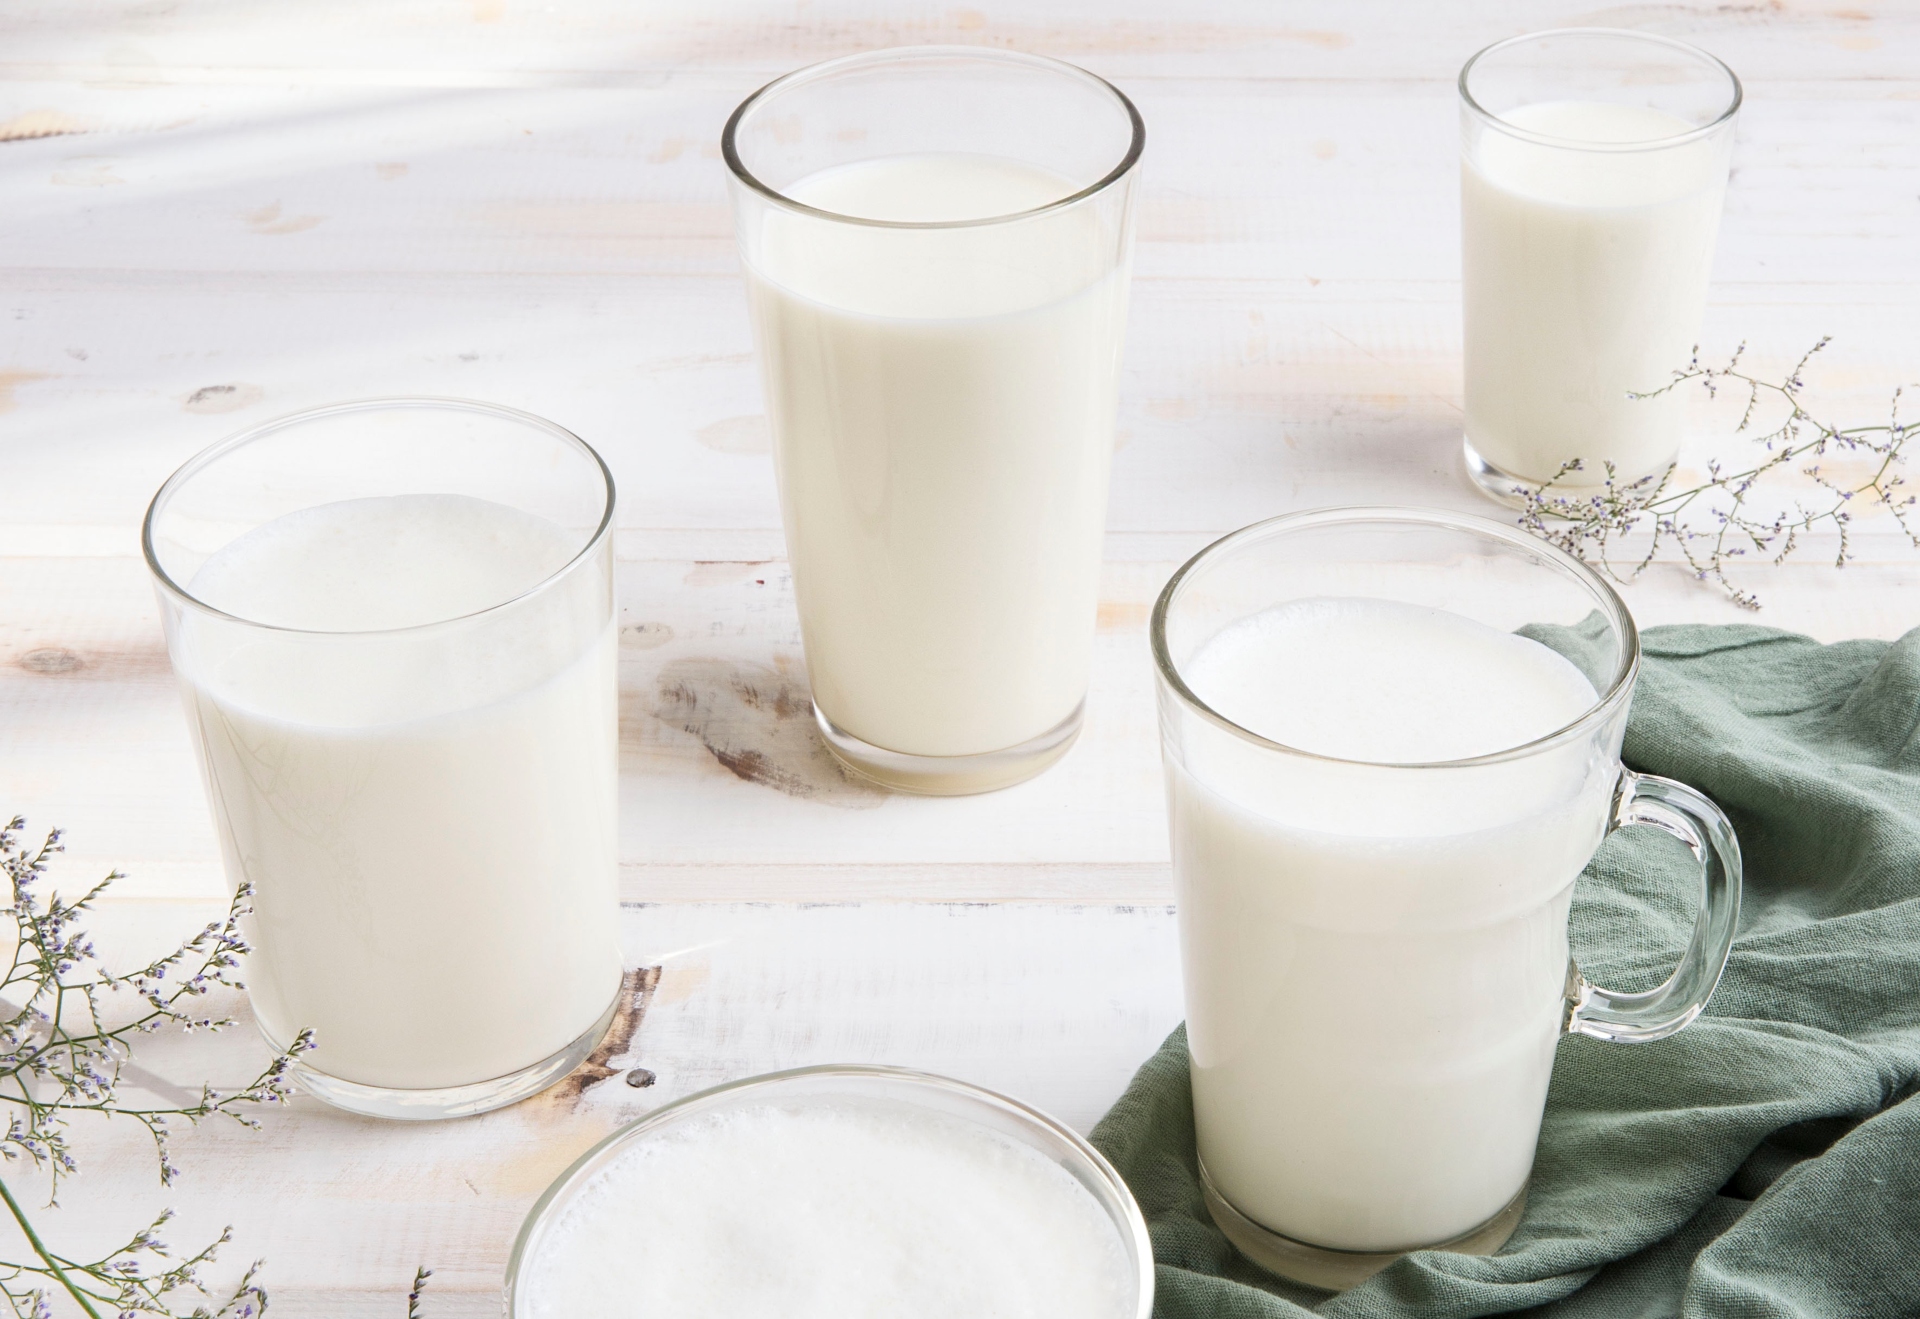 La ciencia permite una mejor calidad nutricional y composicional de la leche gracias a la selección genética